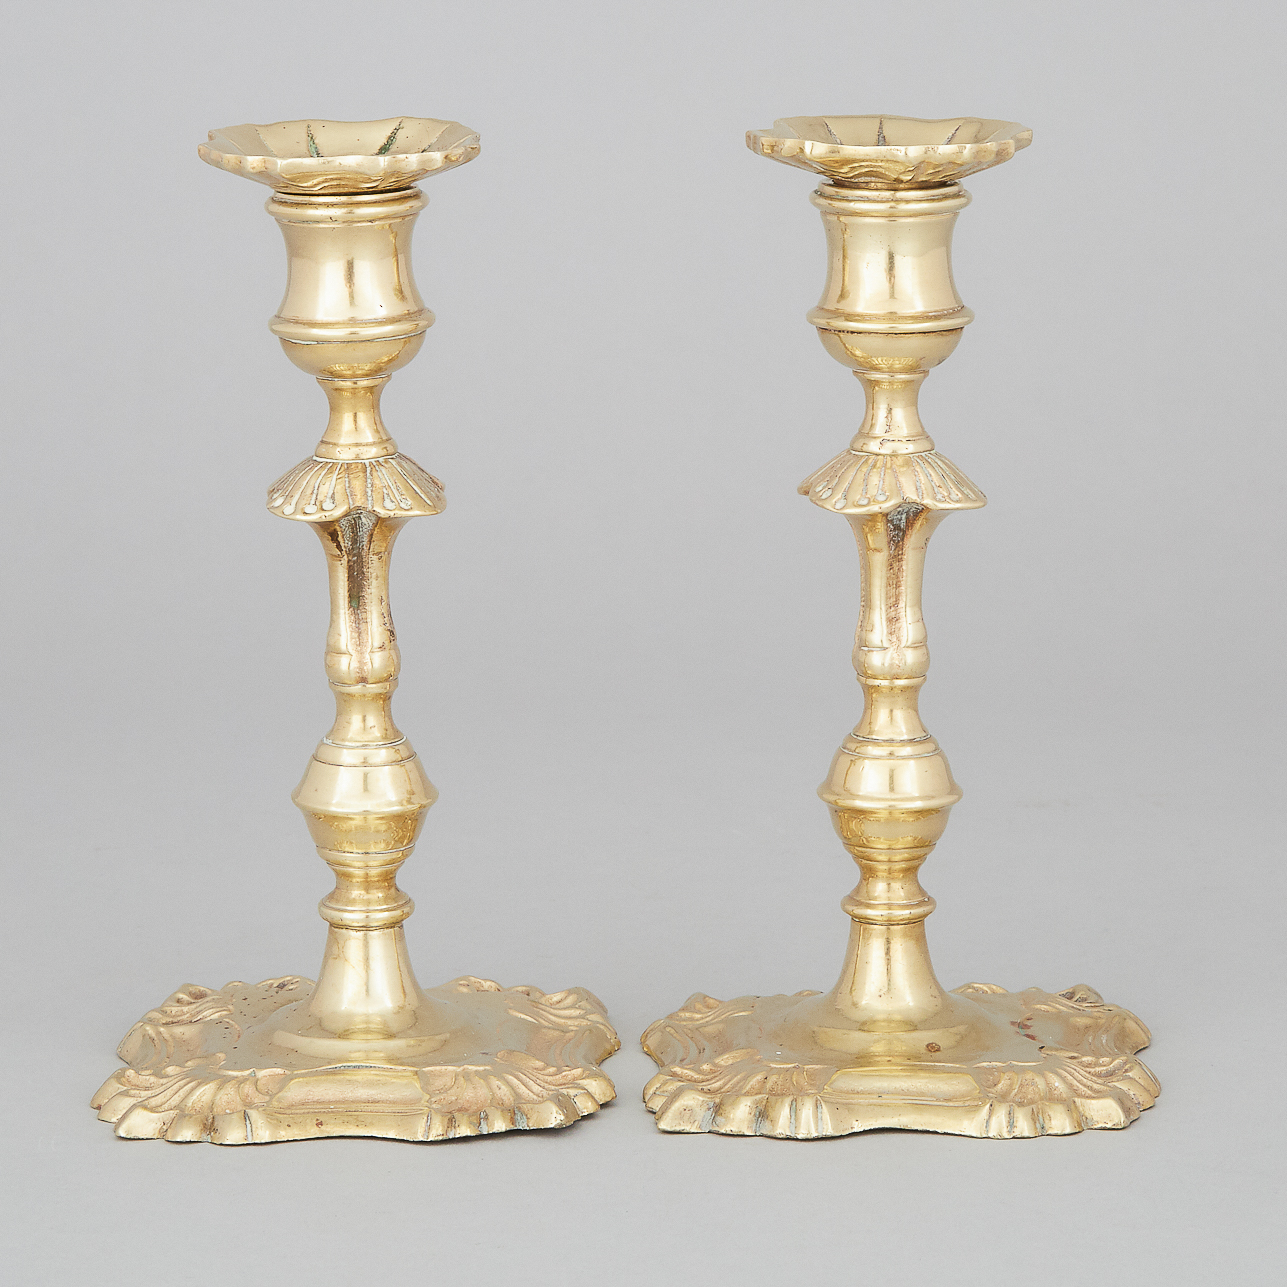 Pair of Georgian Brass Candlesticks, c.1740-50